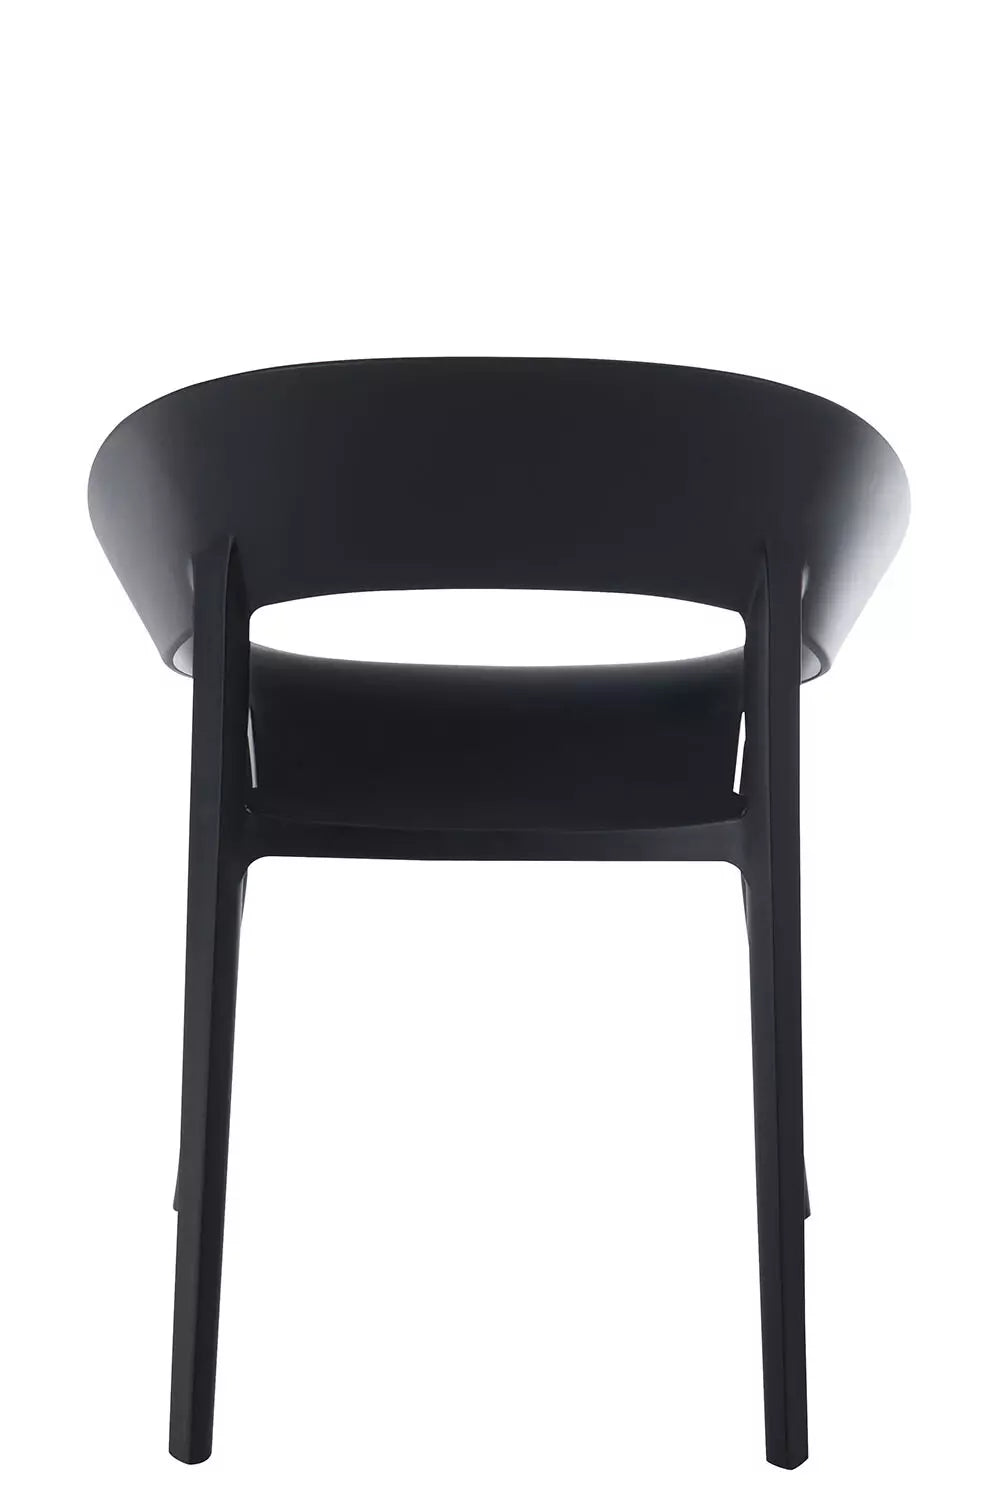 Chaise-Plastique-Noir-Interieur-pas-cher